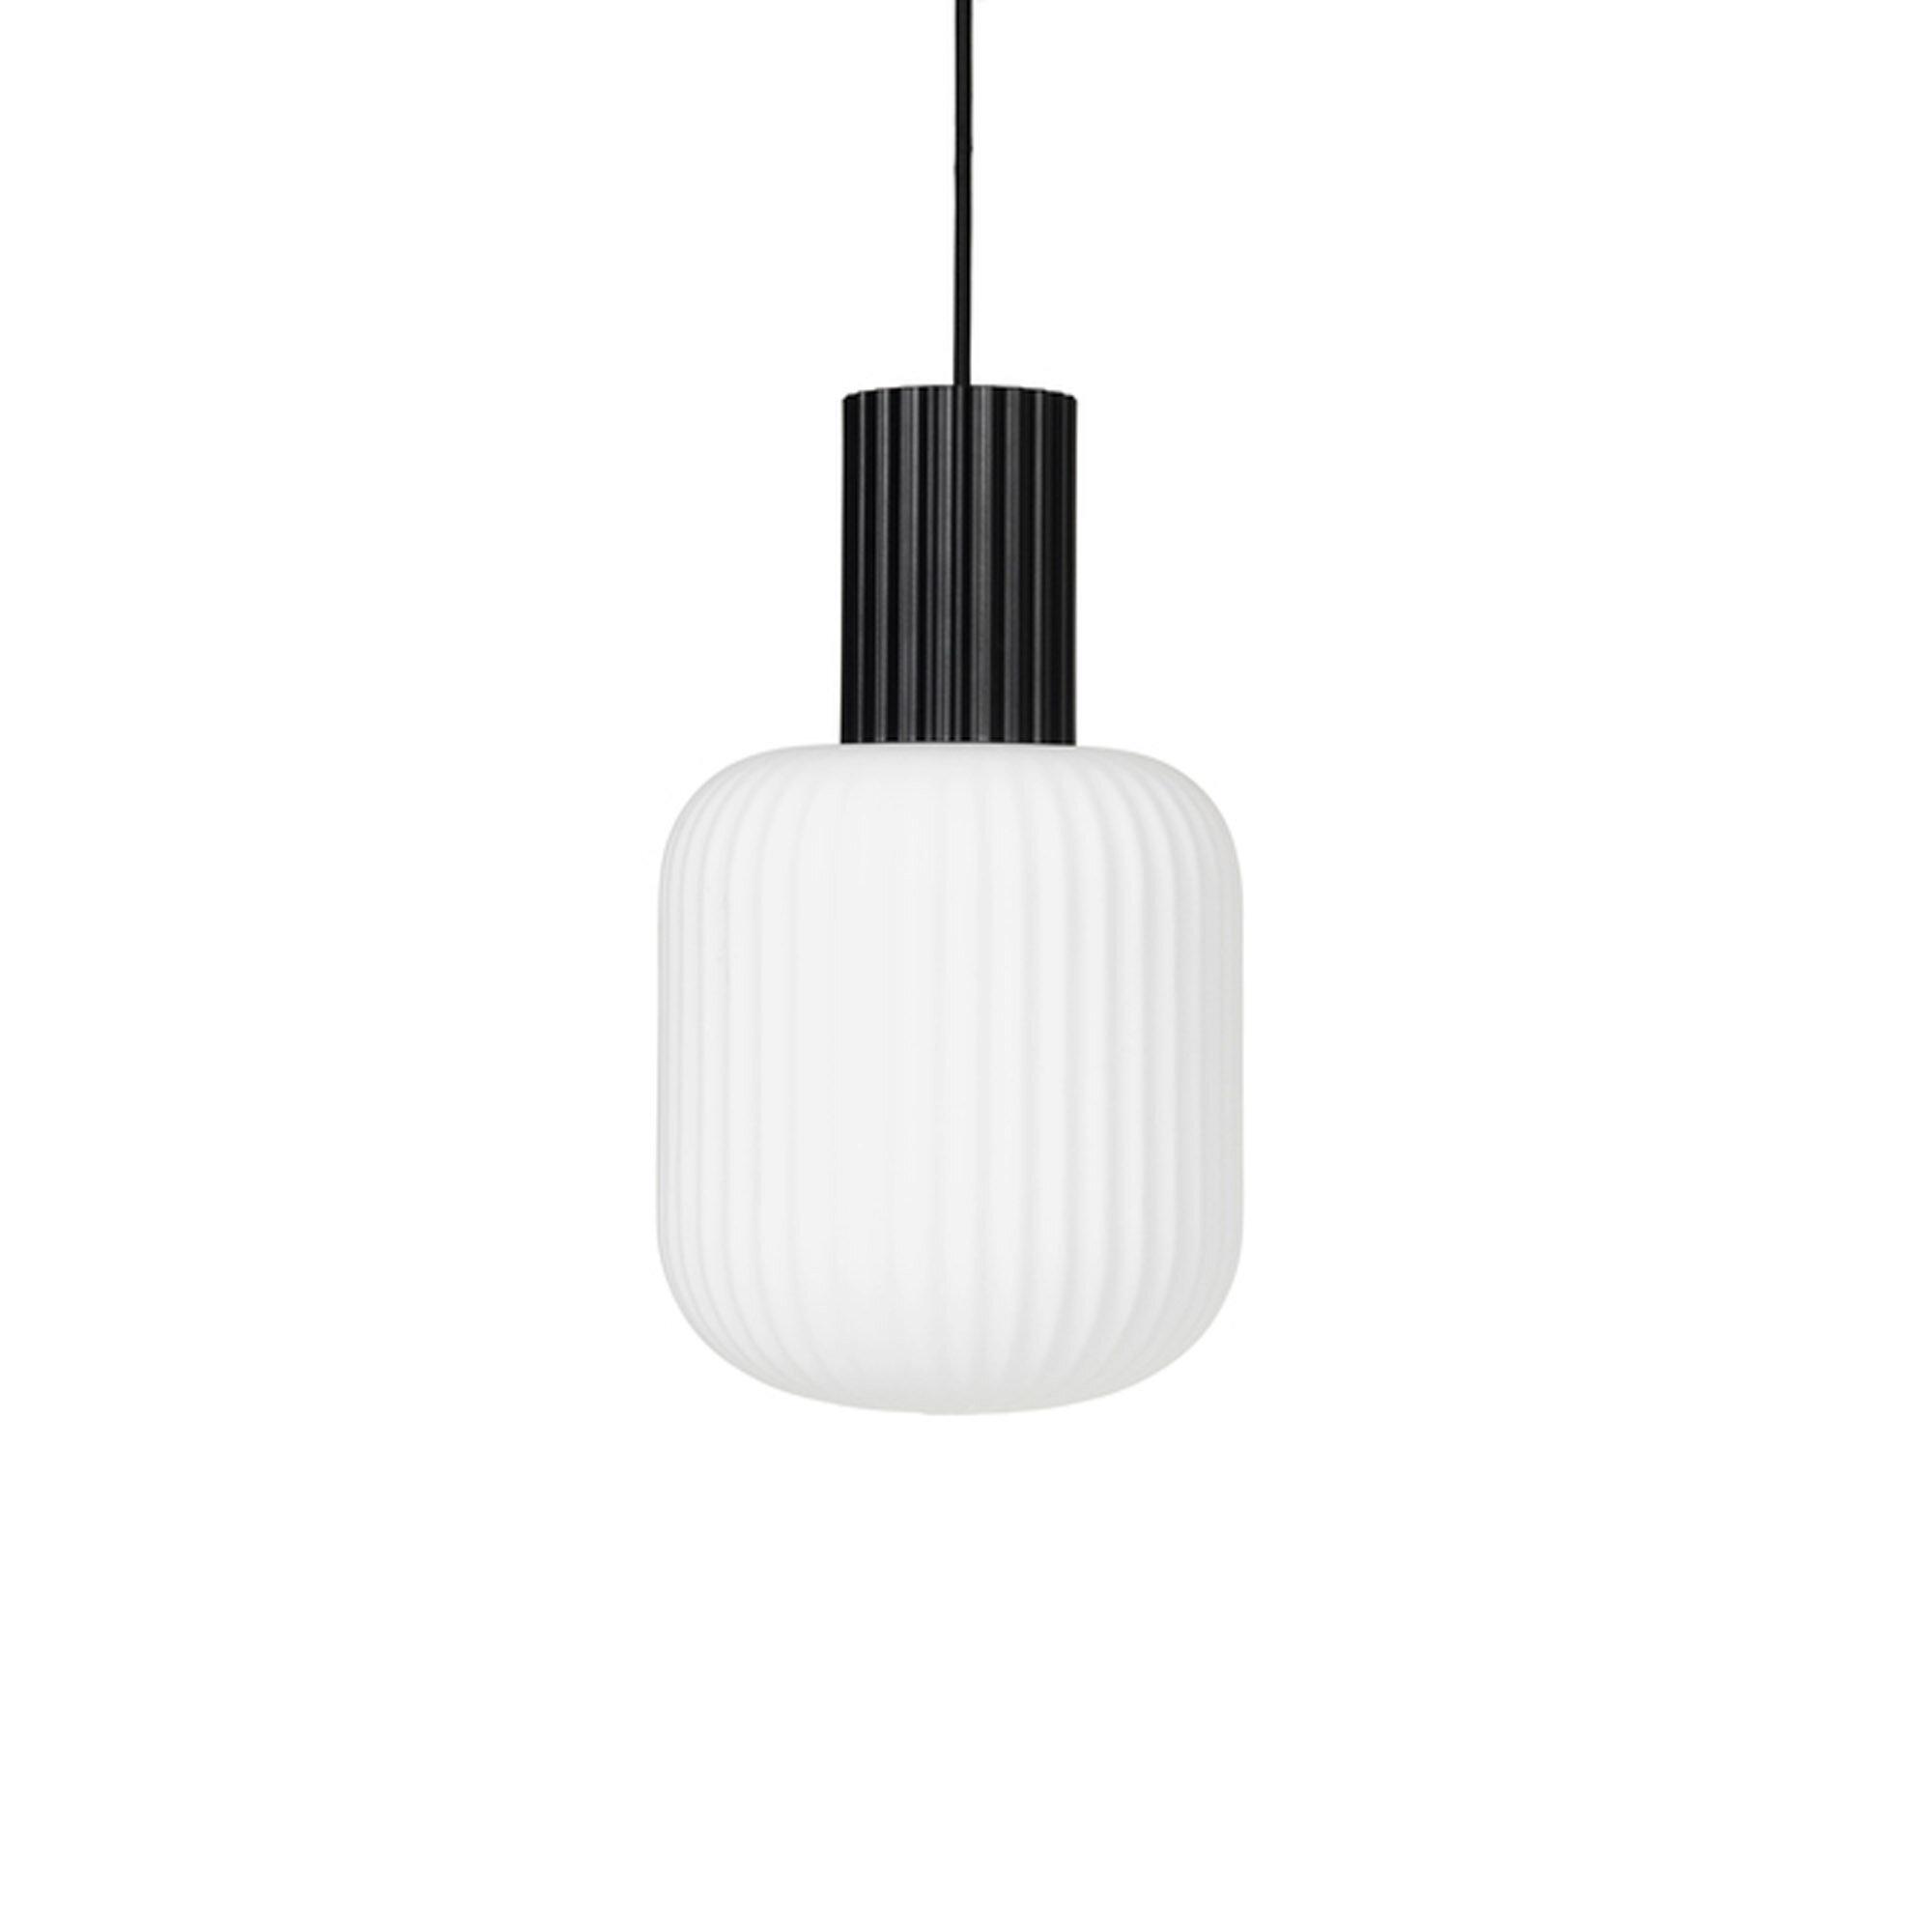  Loft Lampe 'Lolly' fra Broste Copenhagen (Varenr: 60060003)